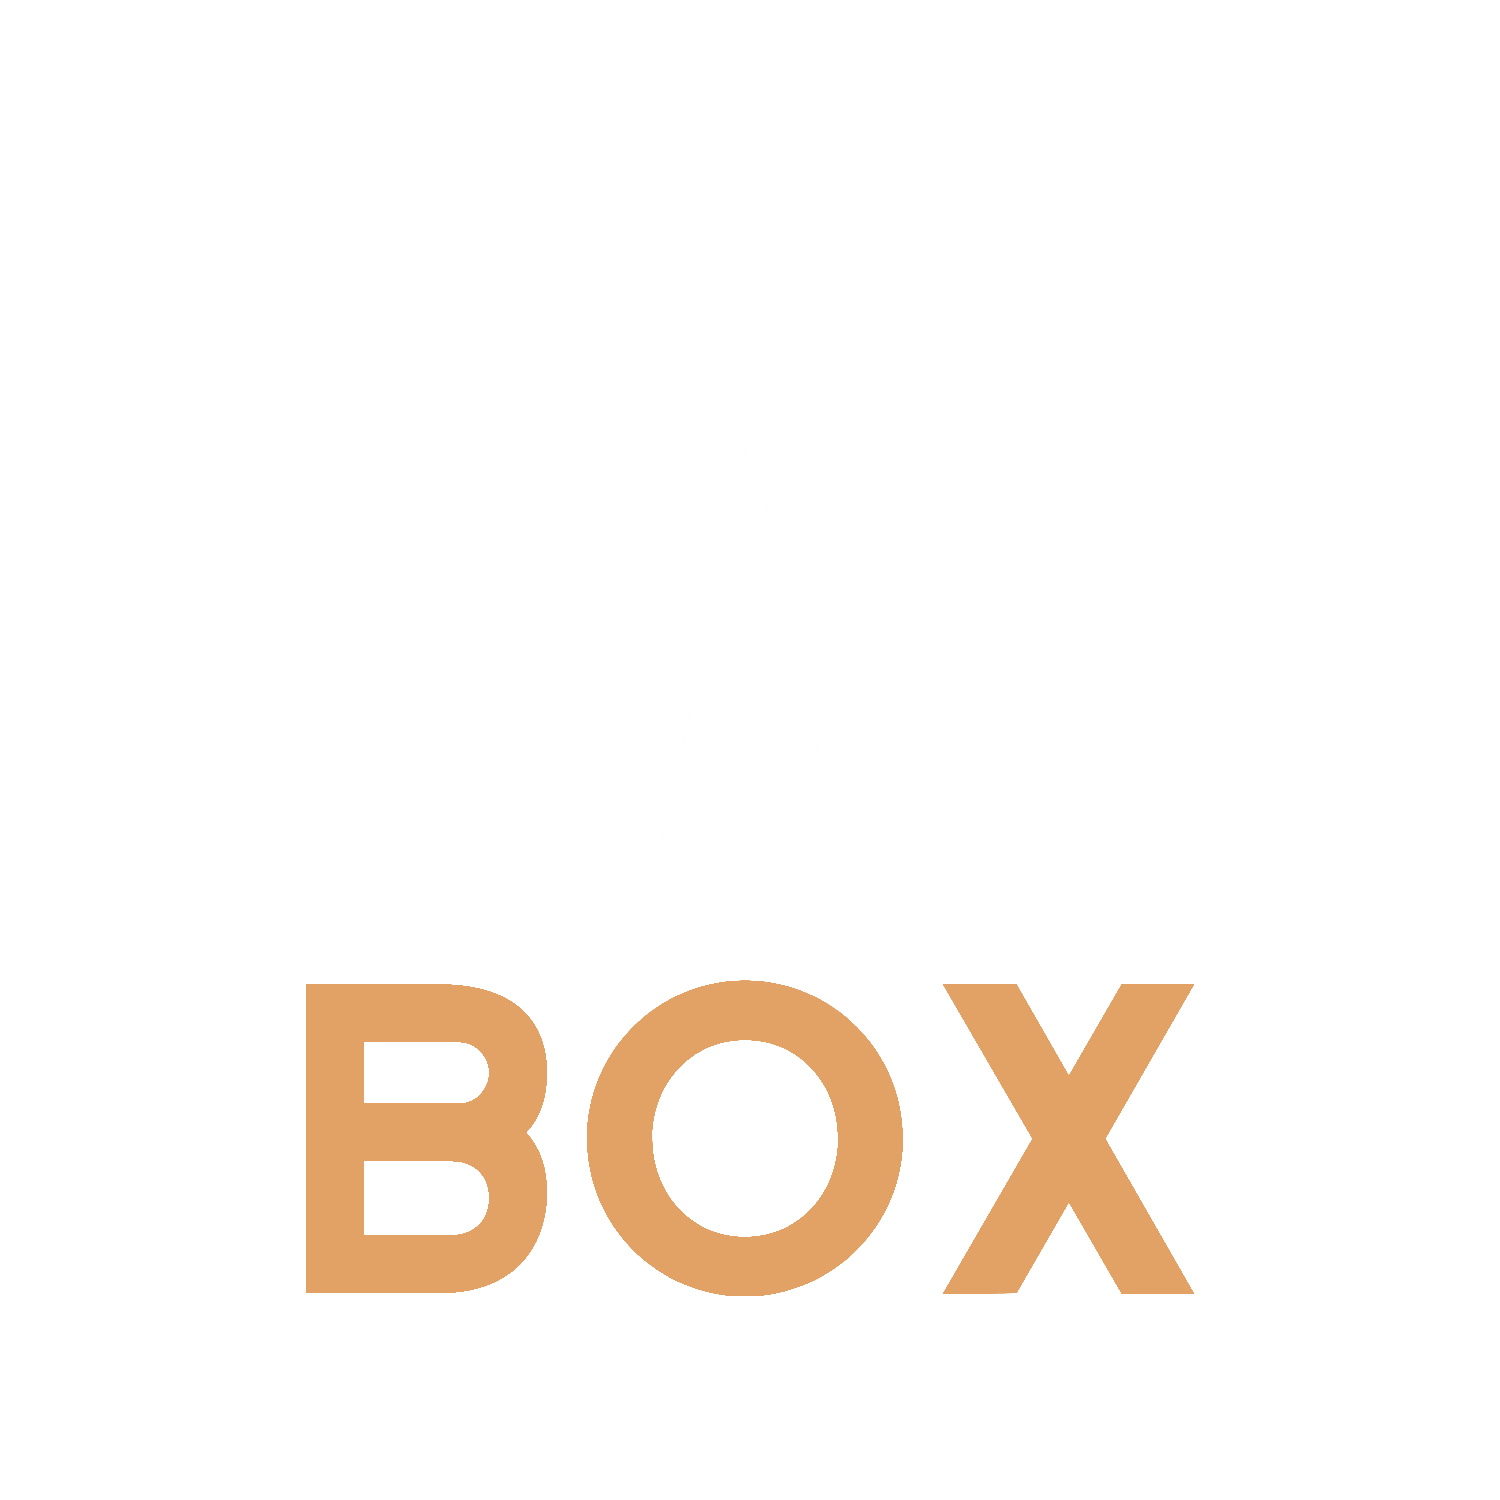 Tie Box